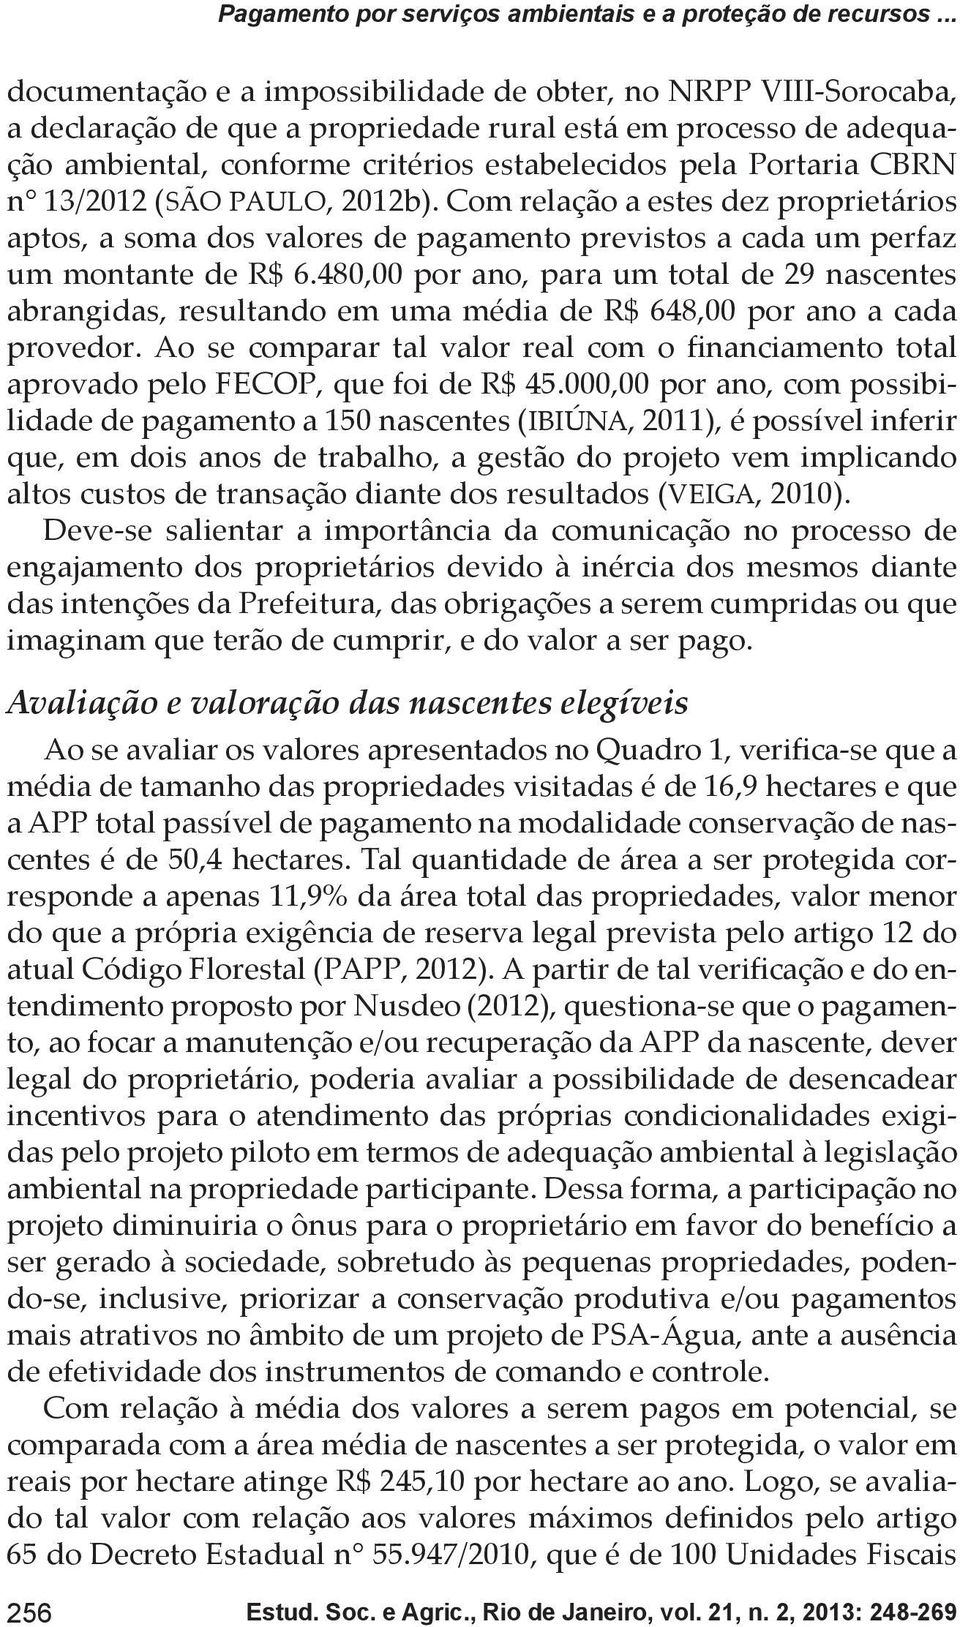 CBRN n 13/2012 (SÃO PAULO, 2012b). Com relação a estes dez proprietários aptos, a soma dos valores de pagamento previstos a cada um perfaz um montante de R$ 6.